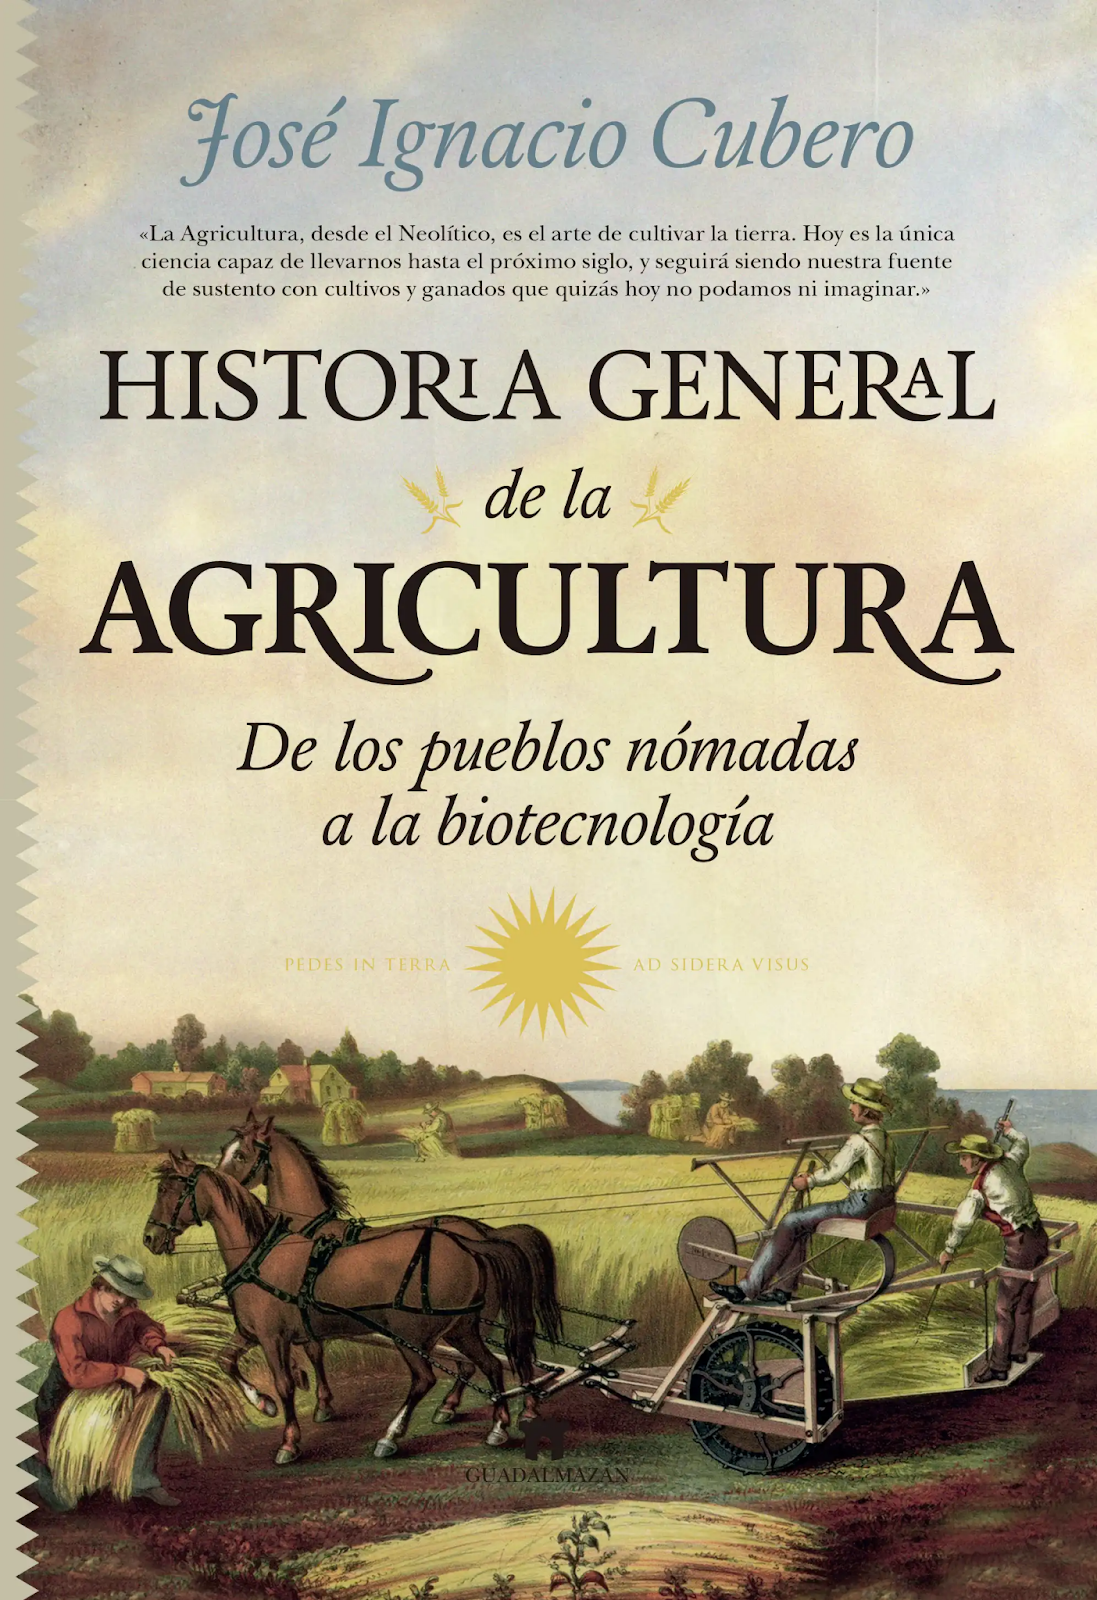 HISTORIA GENERAL DE LA AGRICULTURA-José Ignacio Cubero Salmerón- Editorial Guadalmazan